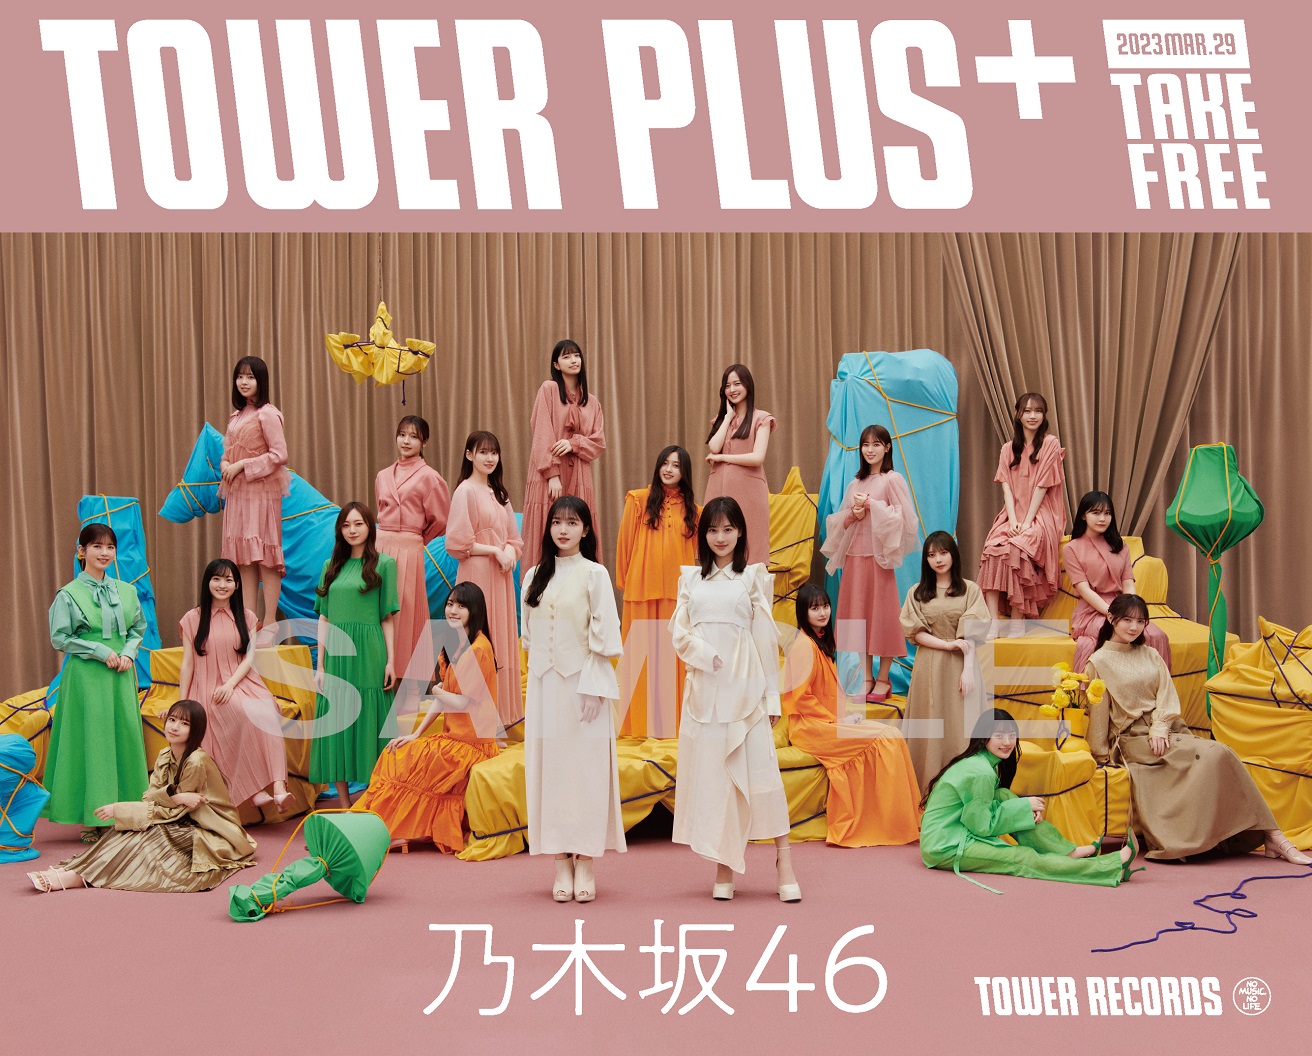 乃木坂46『人は夢を二度見る』リリース記念、TOWER PLUS+特別号が3月29